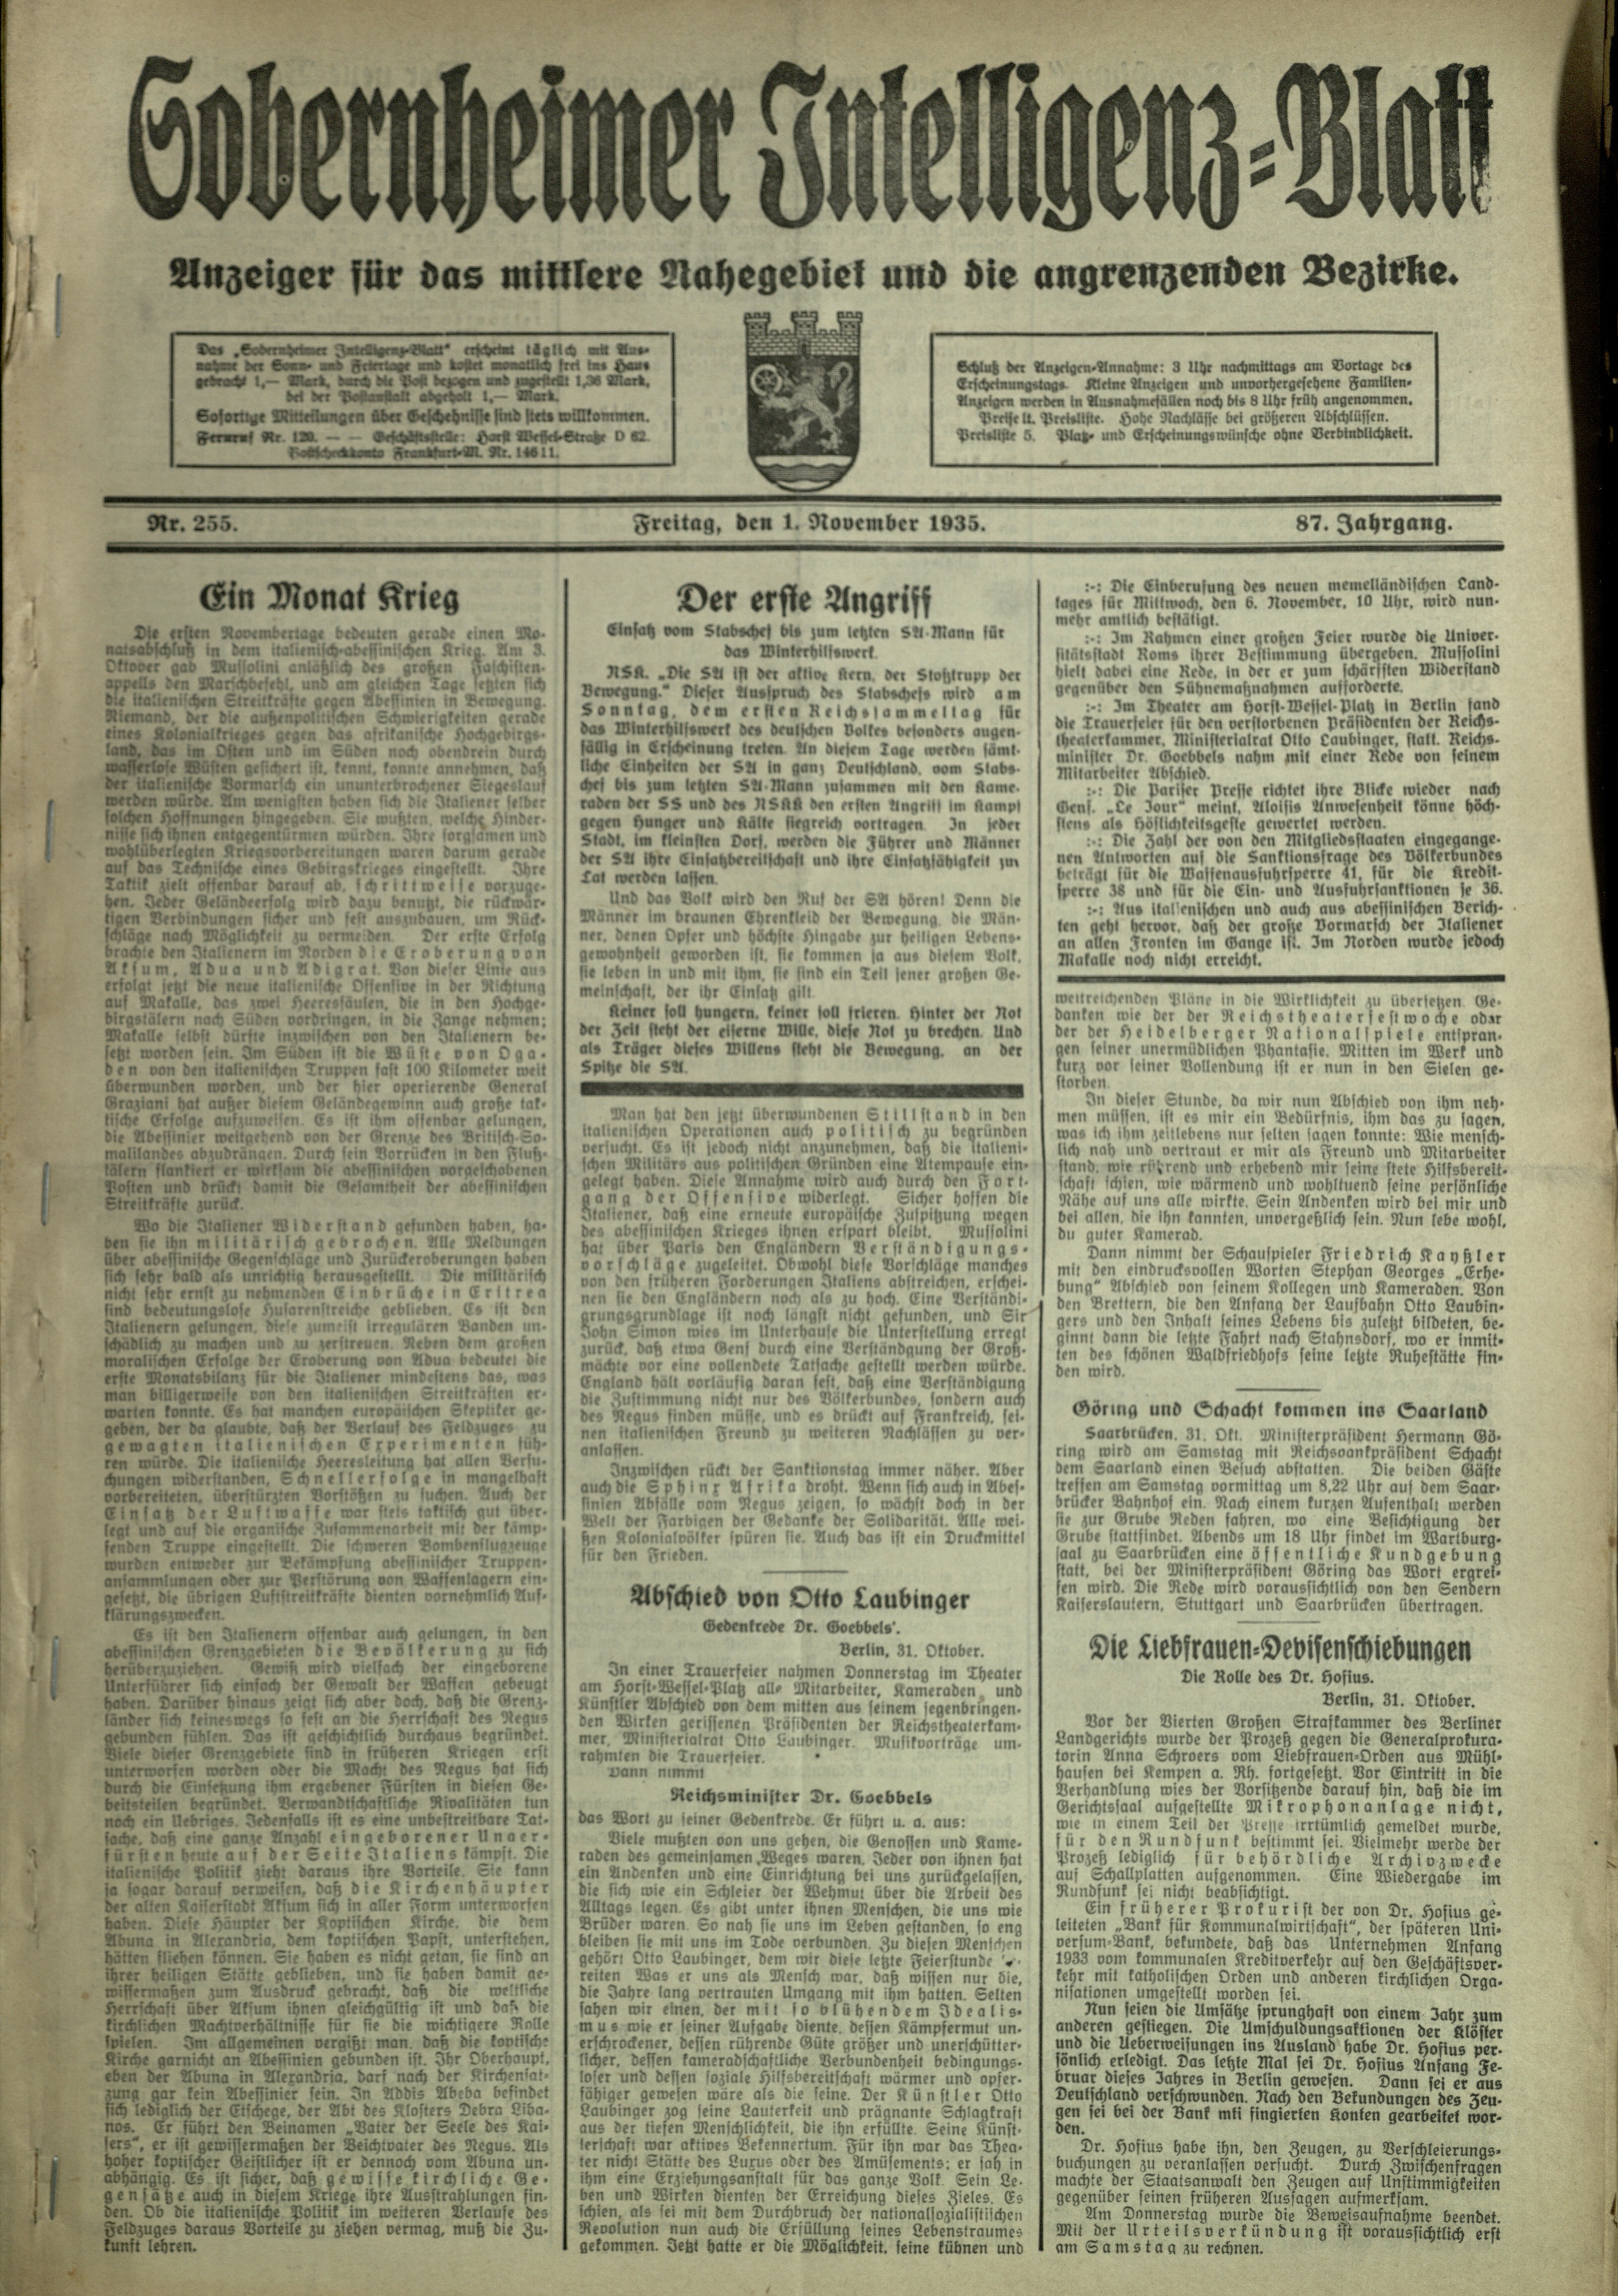 Zeitung: Sobernheimer Intelligenzblatt; November 1935, Jg. 86 Nr. 255 (Heimatmuseum Bad Sobernheim CC BY-NC-SA)